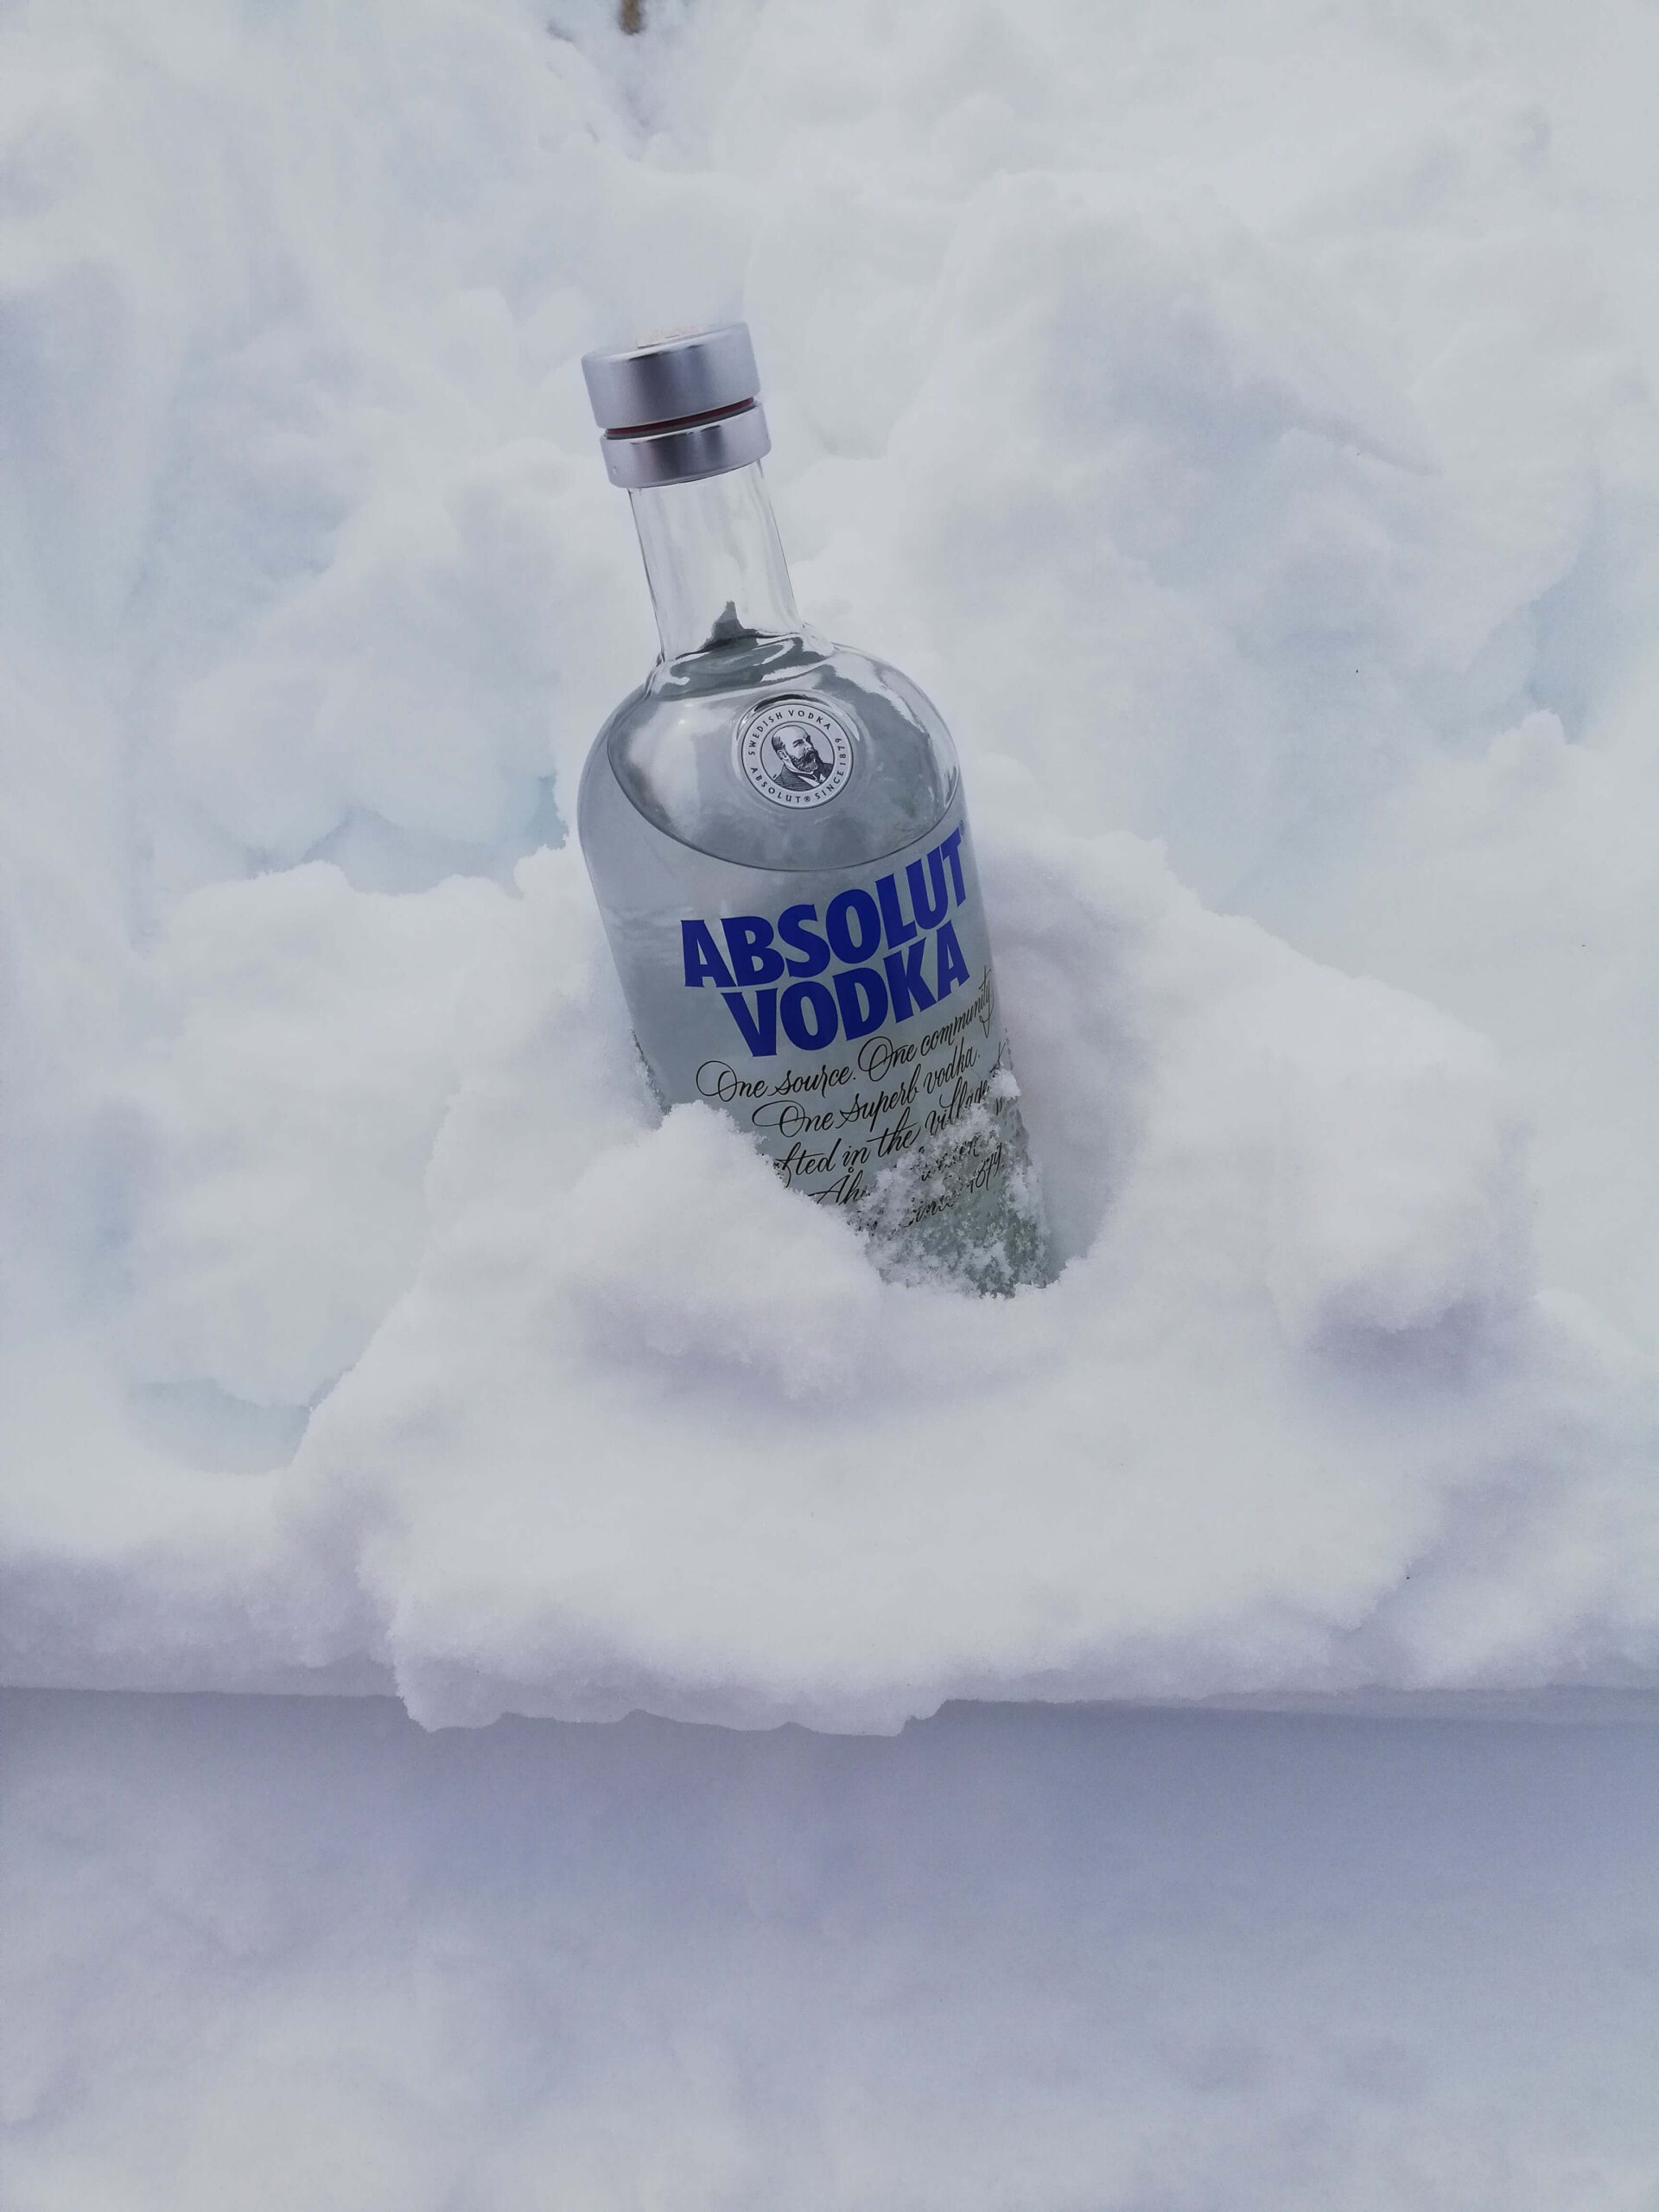 Wodkafles in de sneeuw